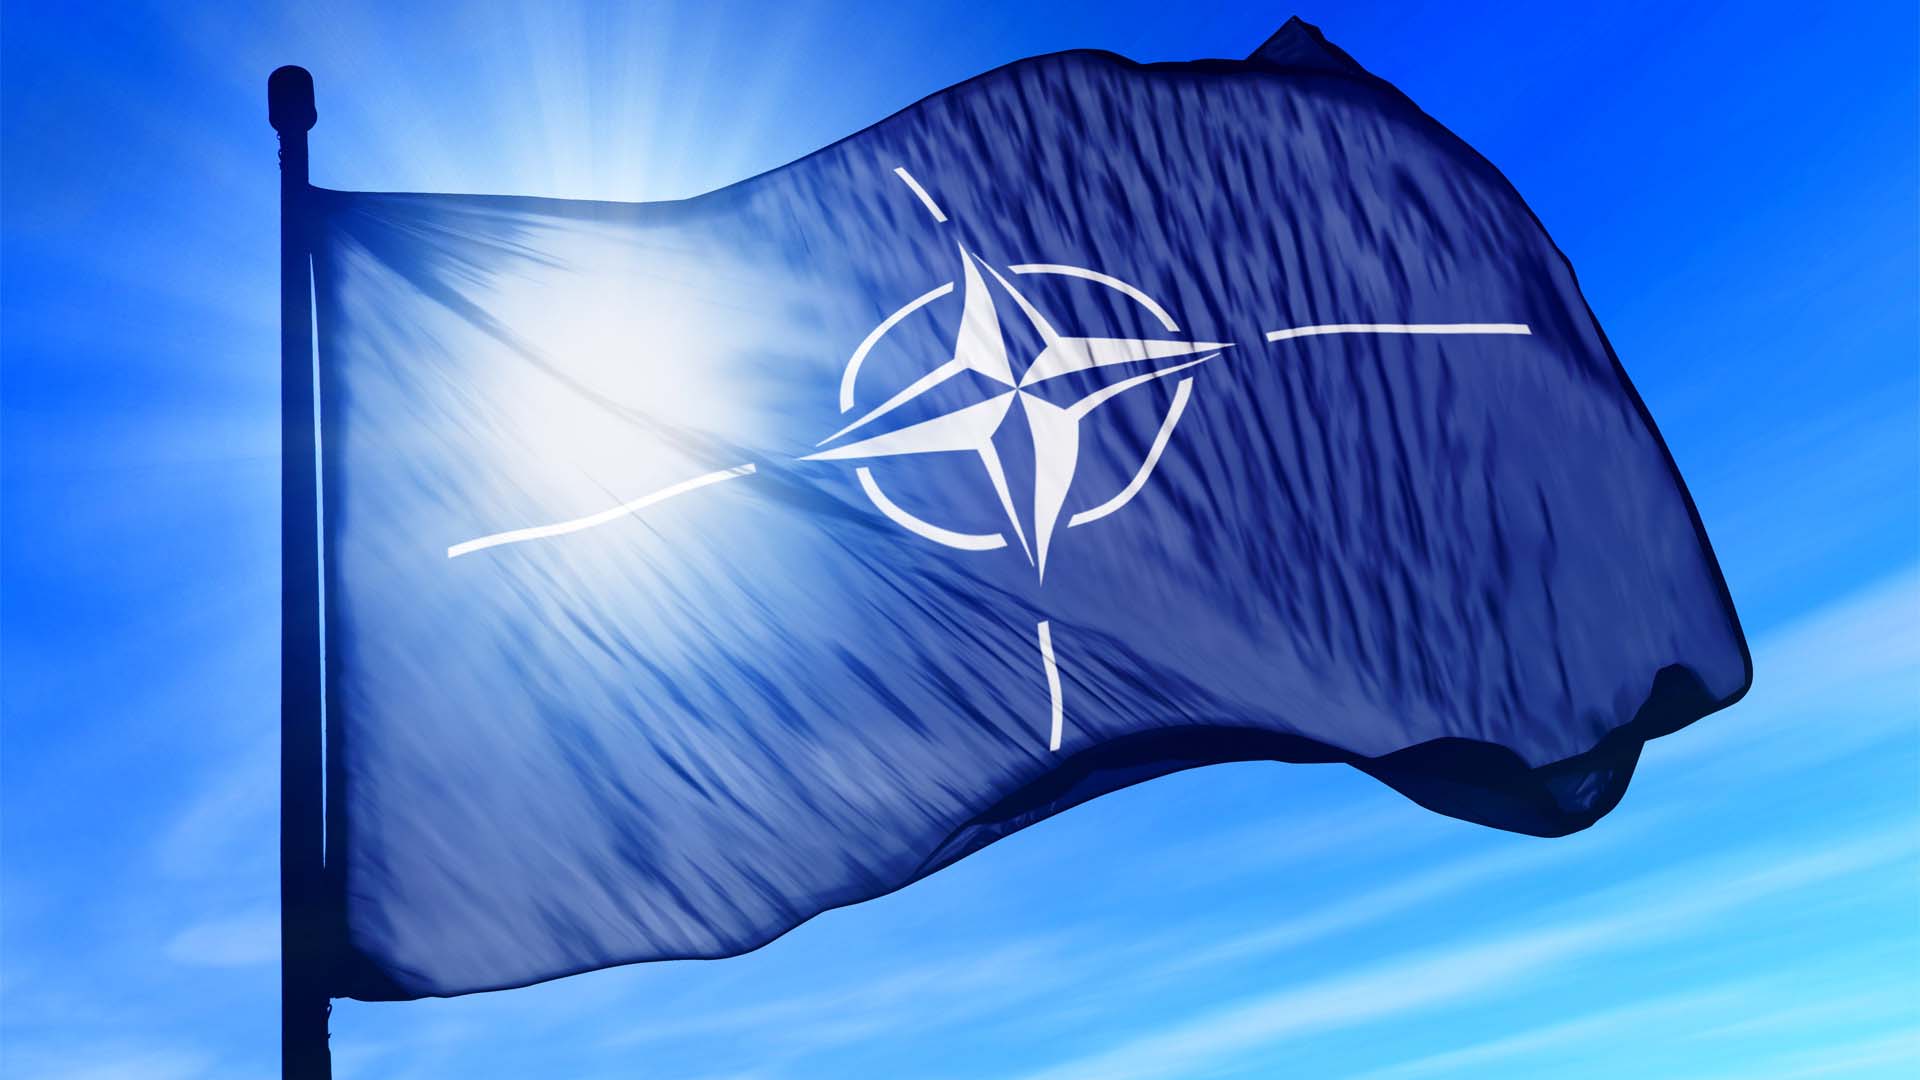 NATO in Iraq – the strategic vision